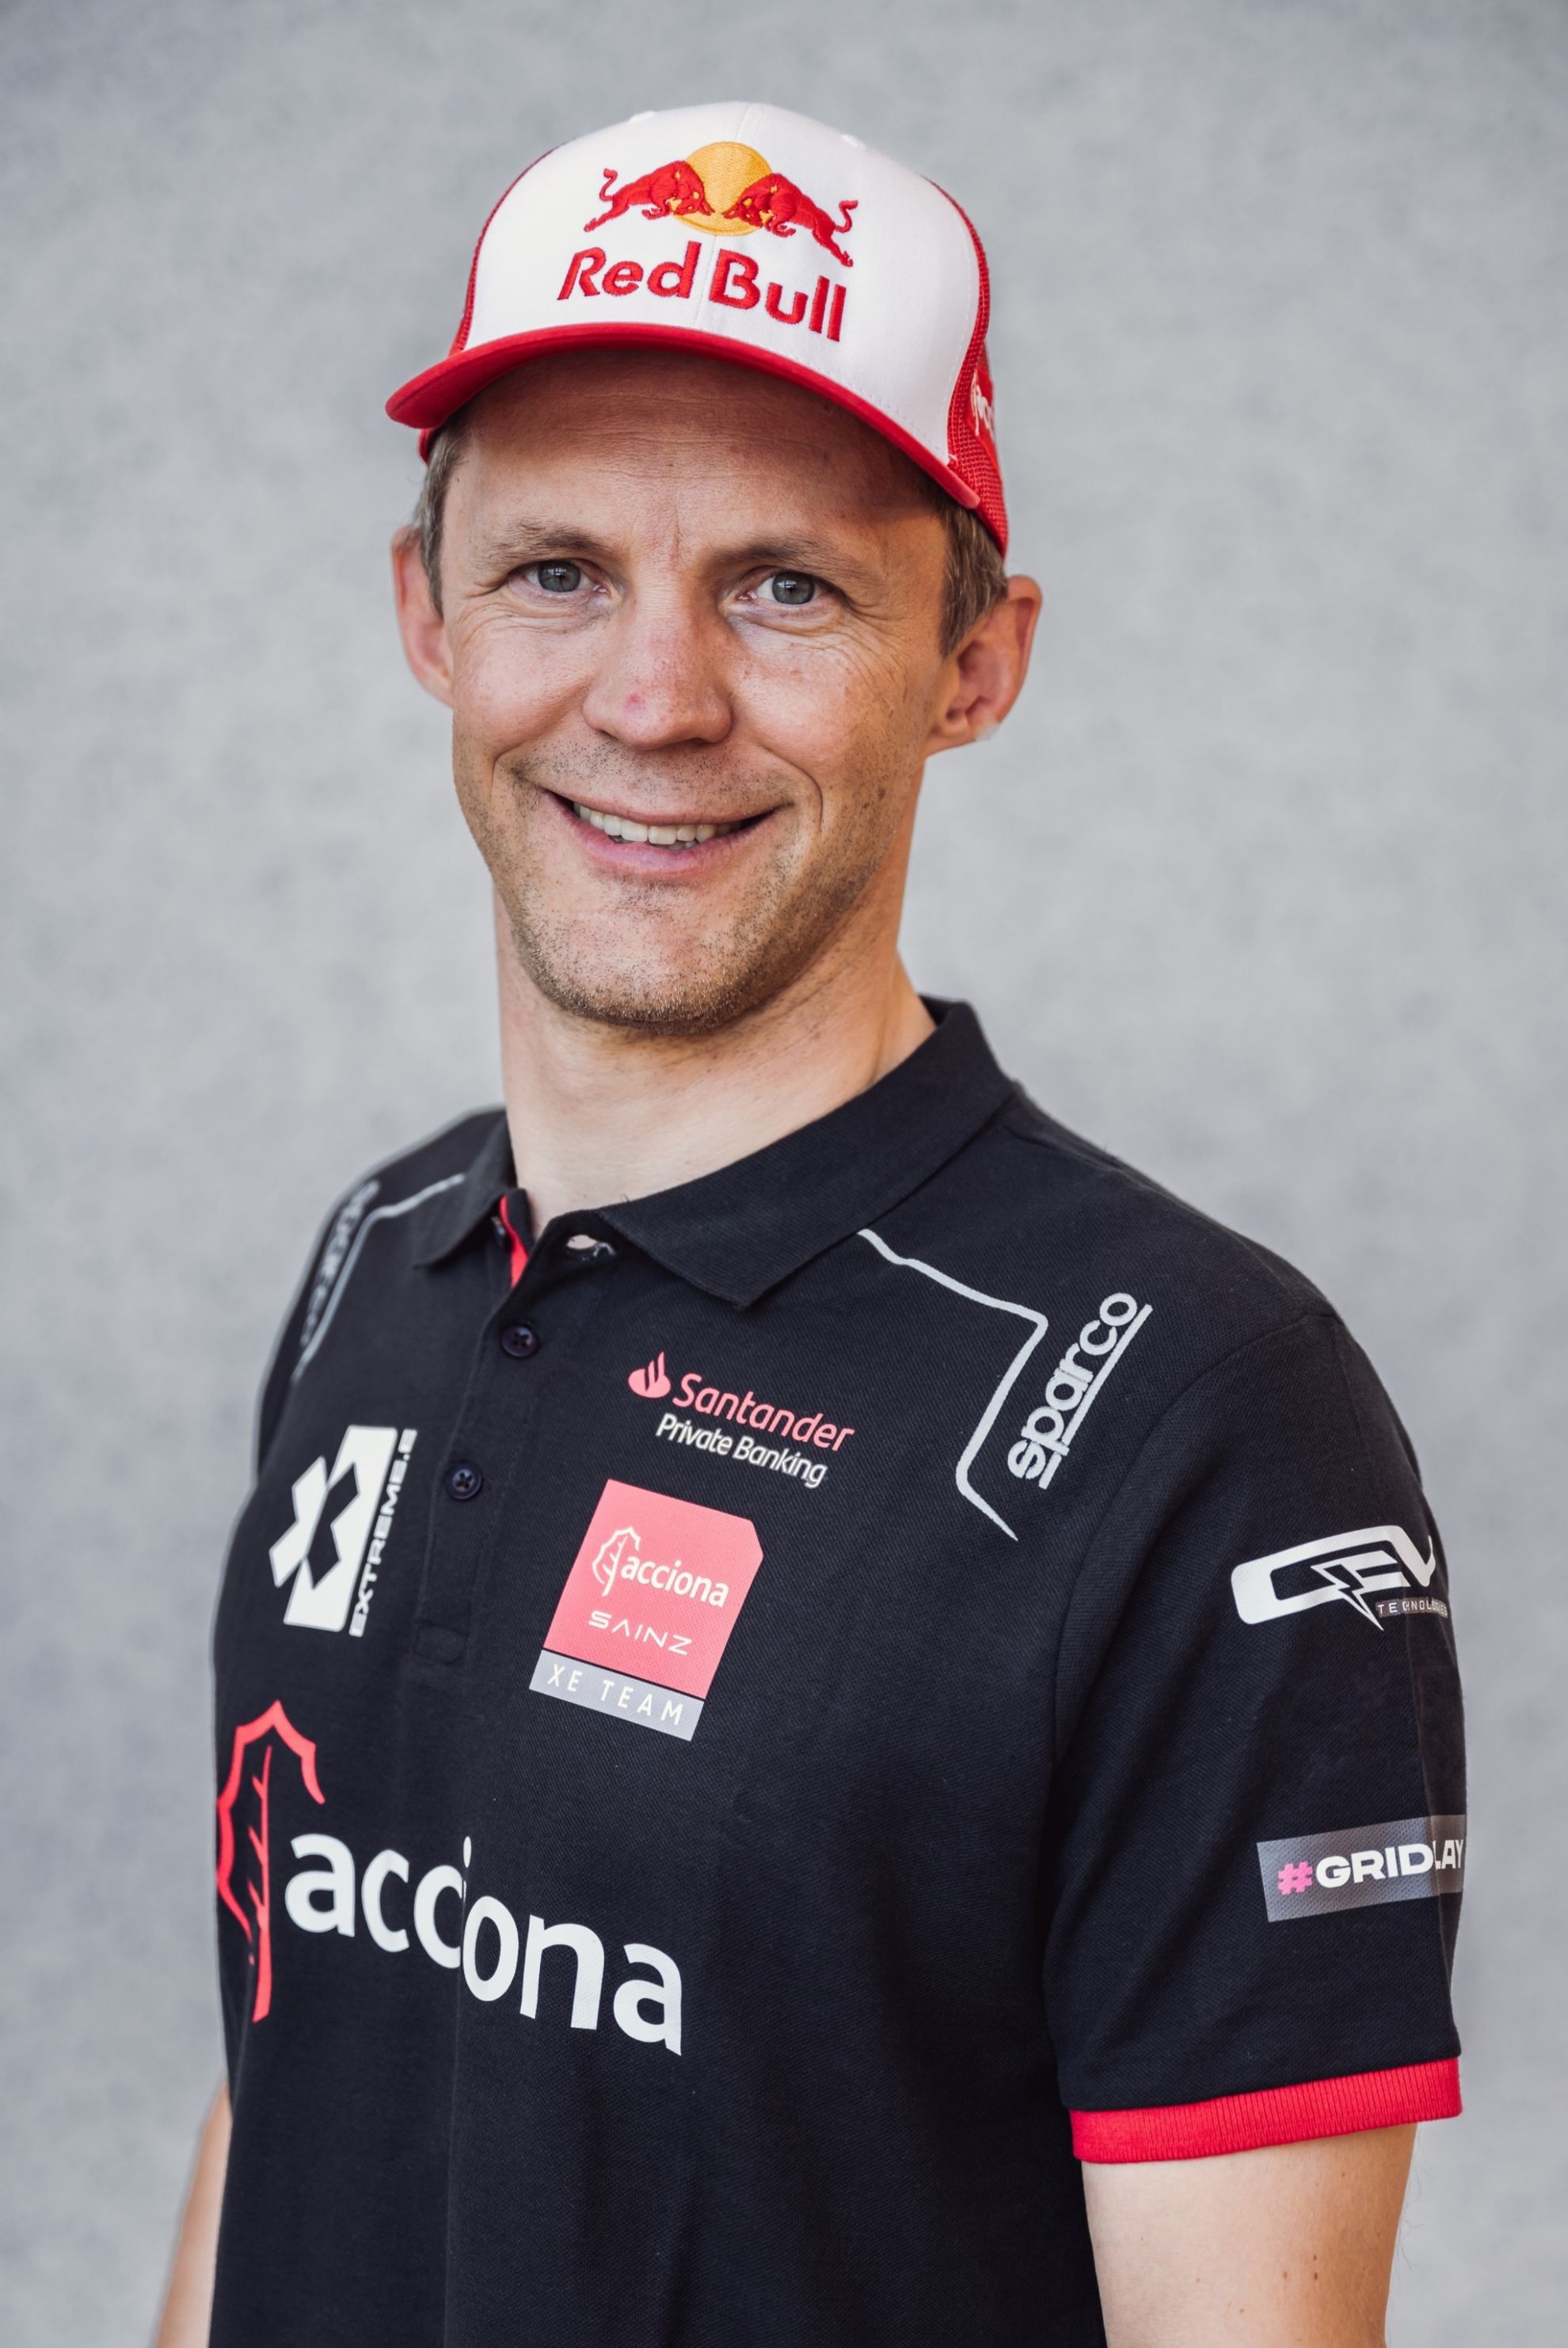 Mattias Ekstrm ser el sustituto de Sainz en el equipo Acciona.